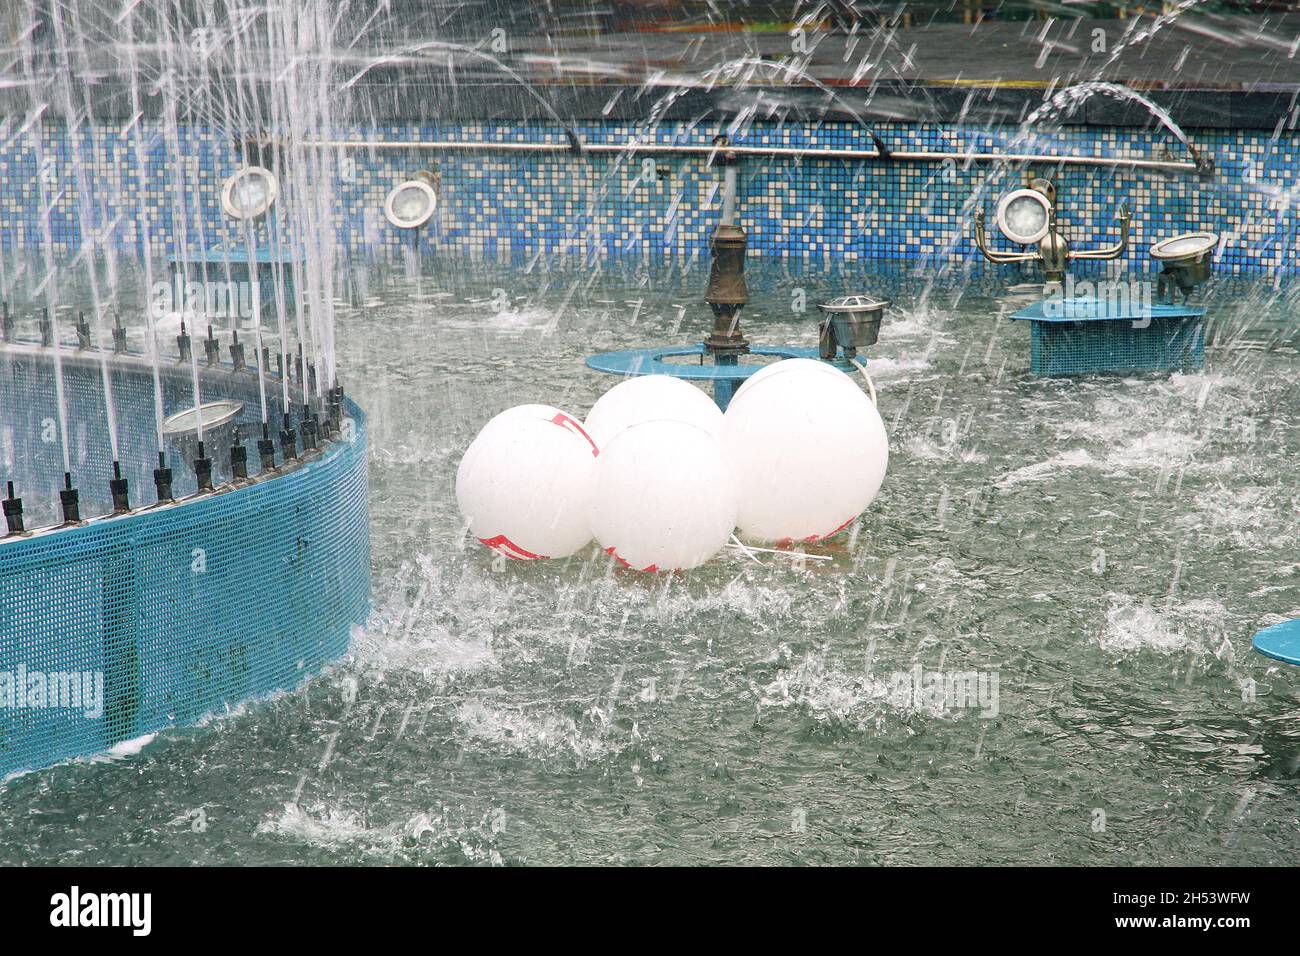 molti palloncini bianchi con un motivo rosso galleggiano nella fontana dopo la festa. ha lasciato cadere le palle nella fontana Foto Stock